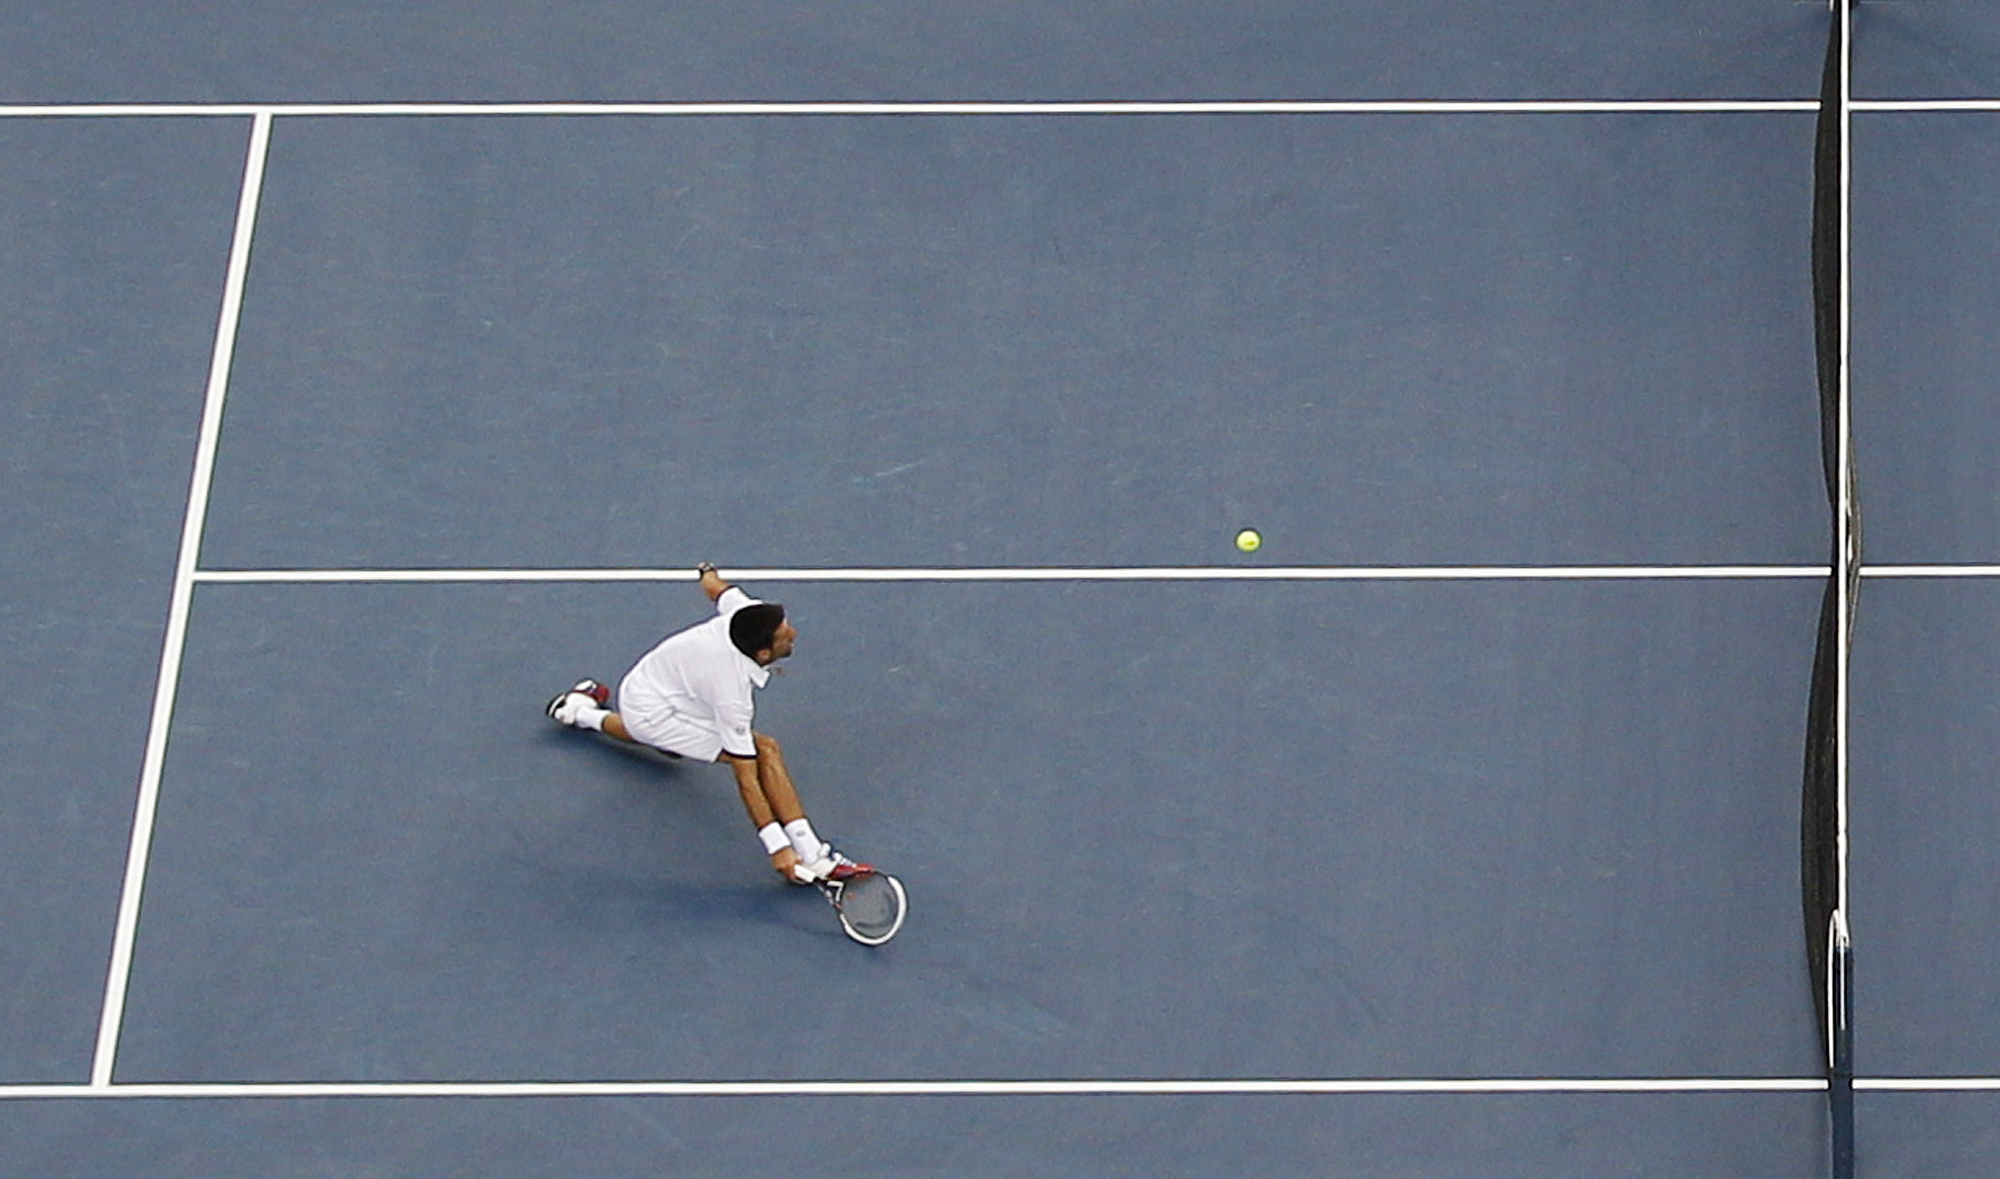 Tennis, Roger Federer, US Open, Novak Djokovic, Rafael Nadal